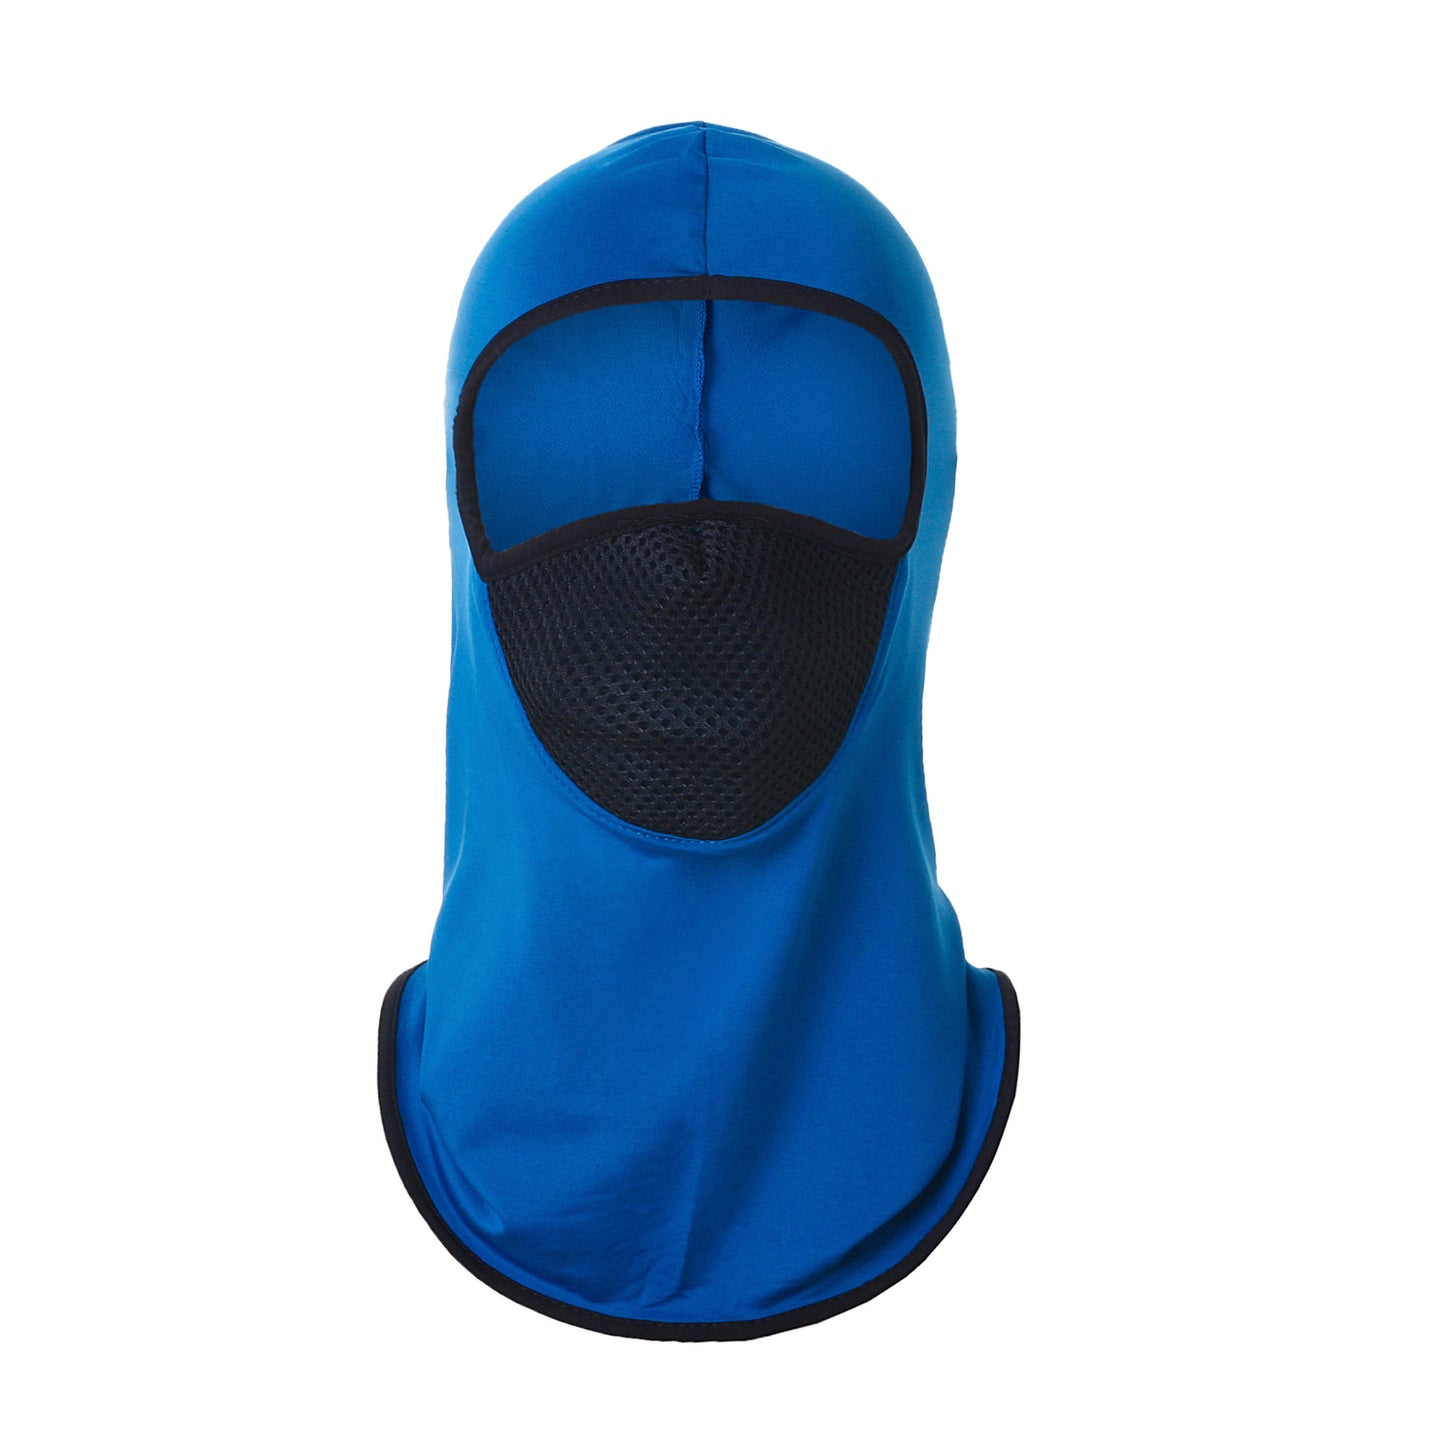 Camping Face Sun Protection Balaclava Sports Thin Cycling Mask